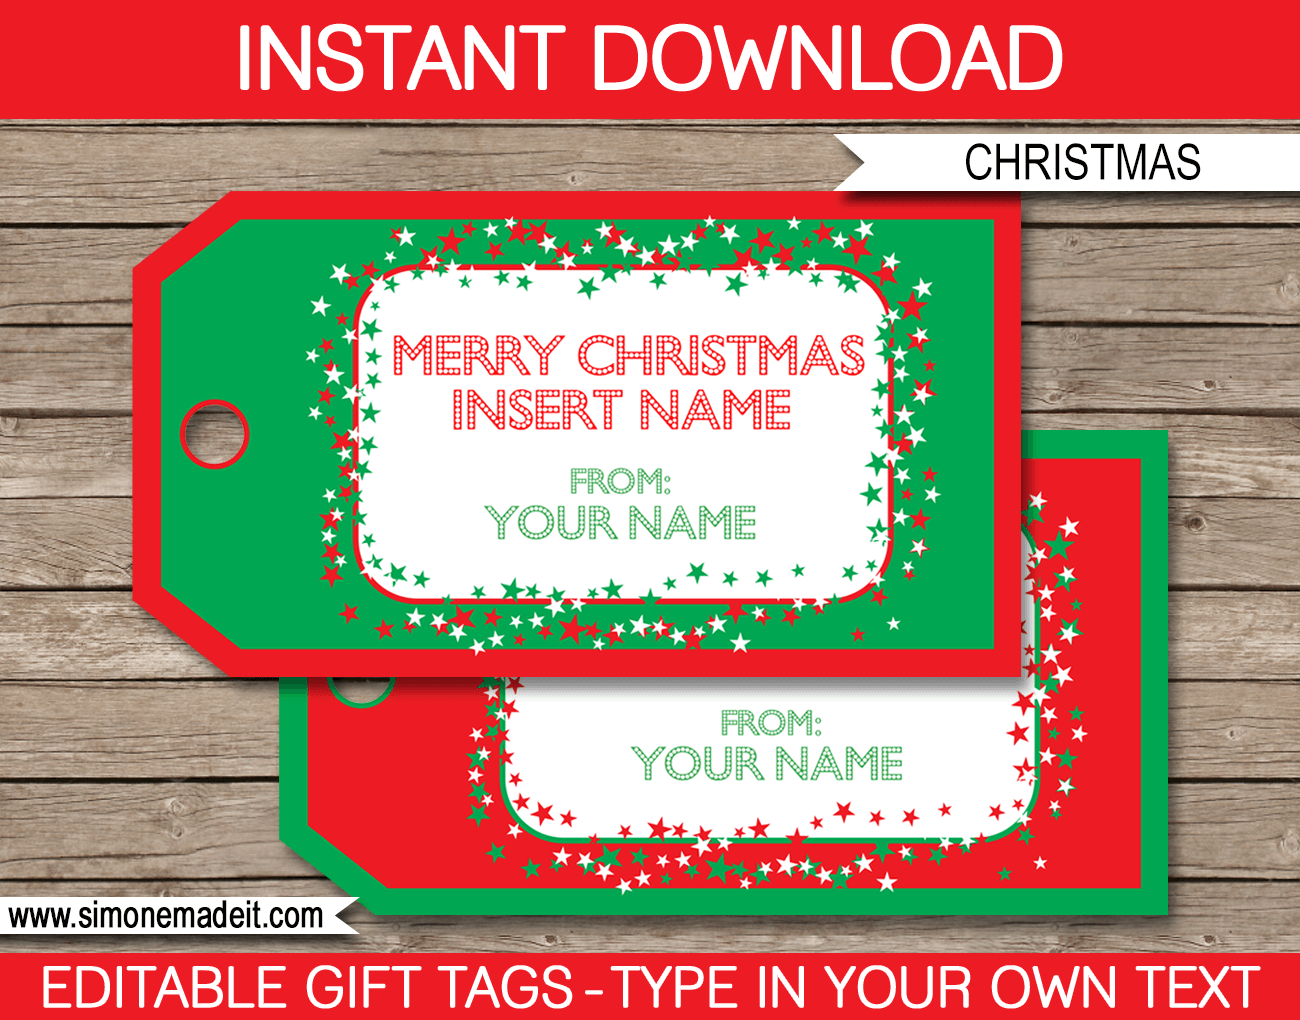 Christmas Gift Tag Template | editable & printable | Merry Christmas | INSTANT DOWNLOAD $3.00 via simonemadeit.com